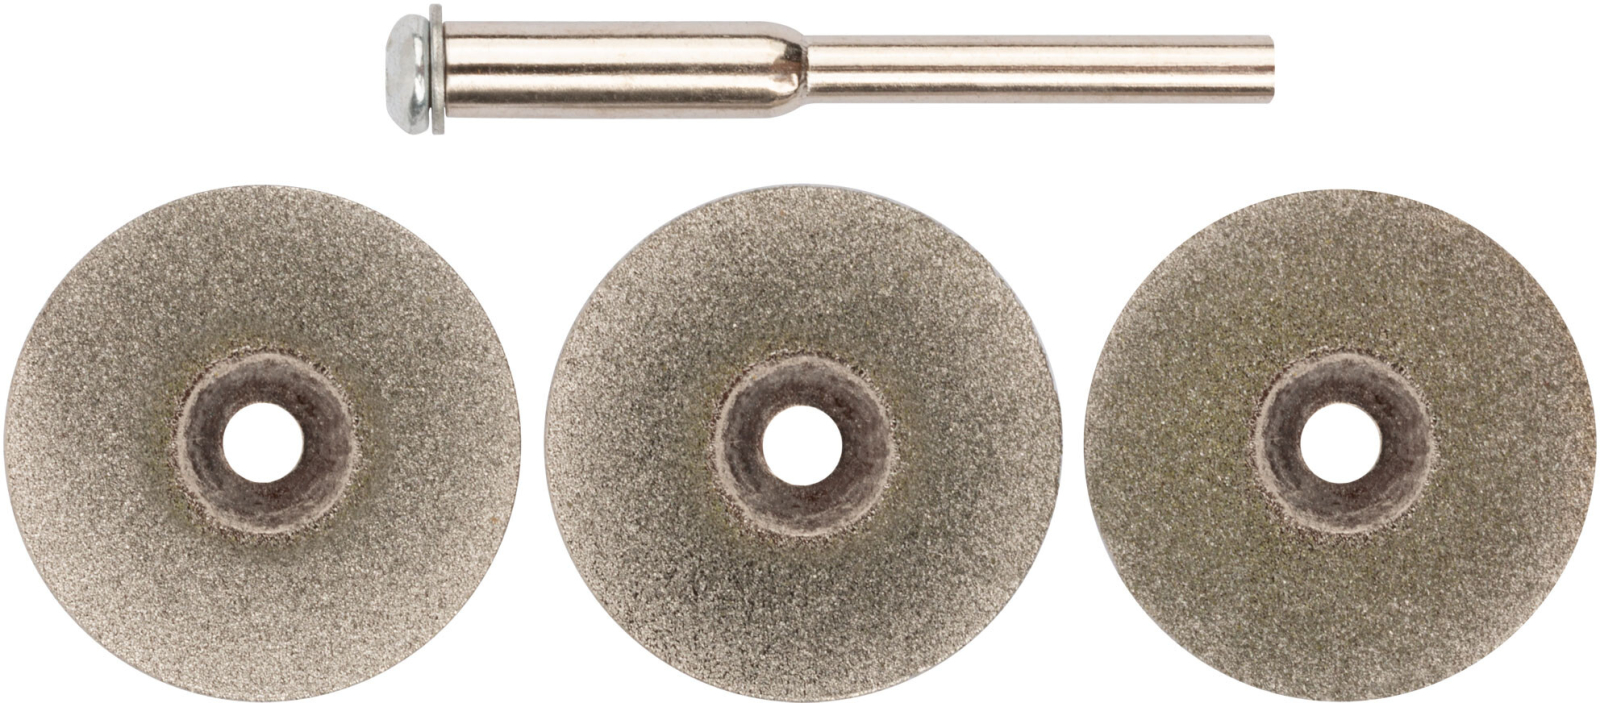 Диск алмазный для гравера 22 мм FIT 3 штуки и держатель (36930)